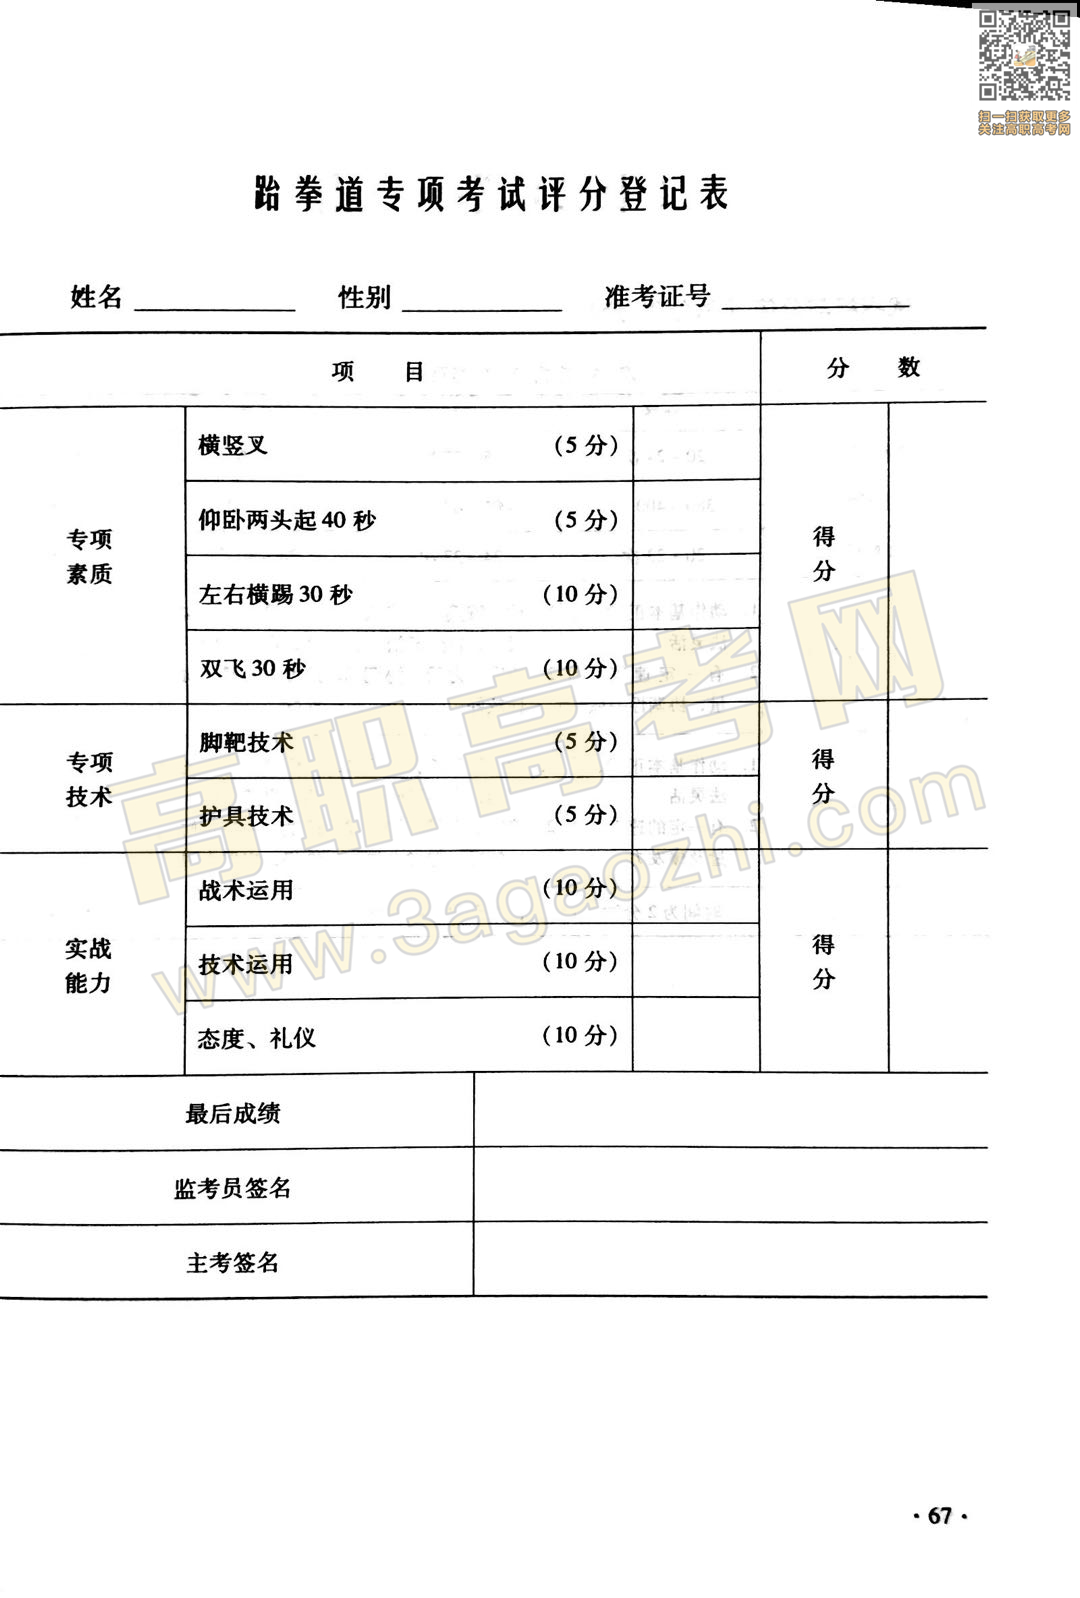 体育证书,2020年广东中职技能课程考试大纲及样题